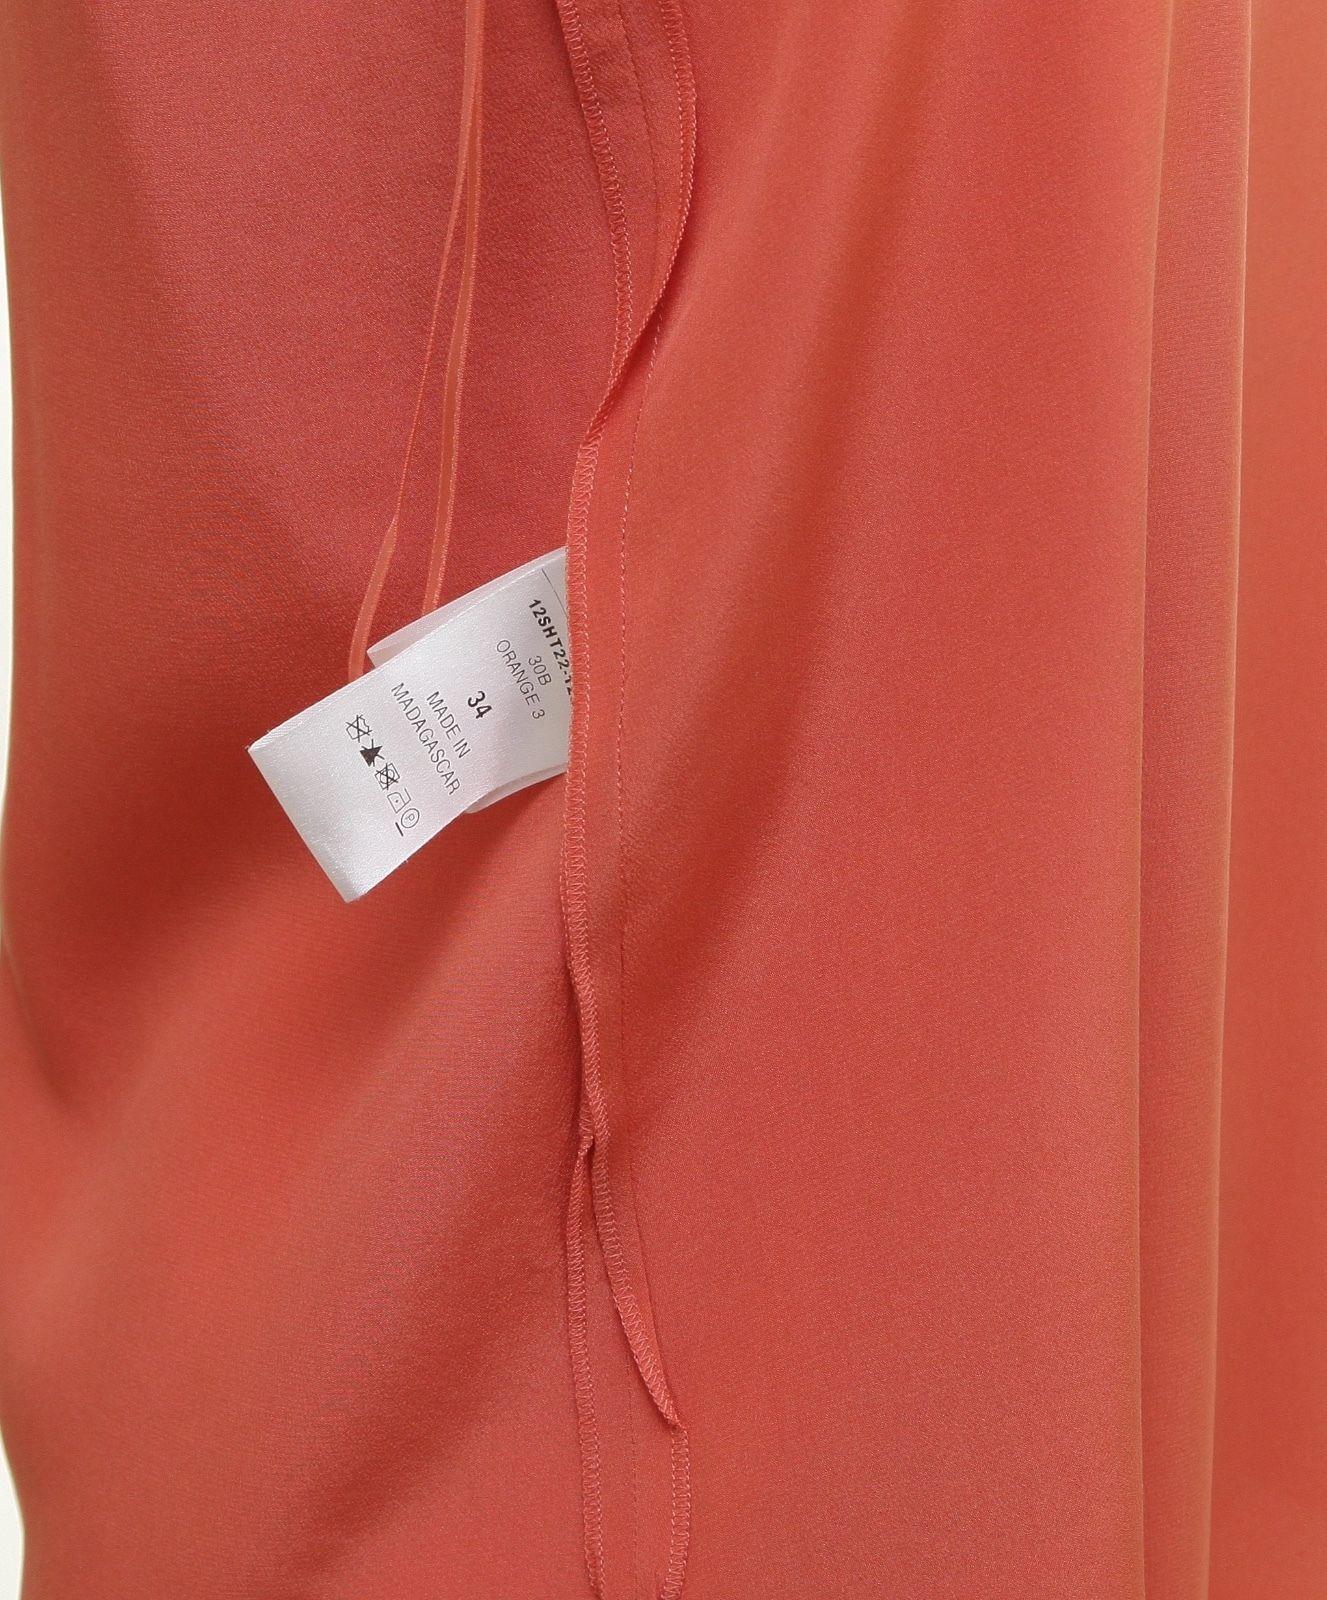 Chloe 12S Orange Seide ärmellose Bluse Top Kleid Shirt 34 im Angebot 2